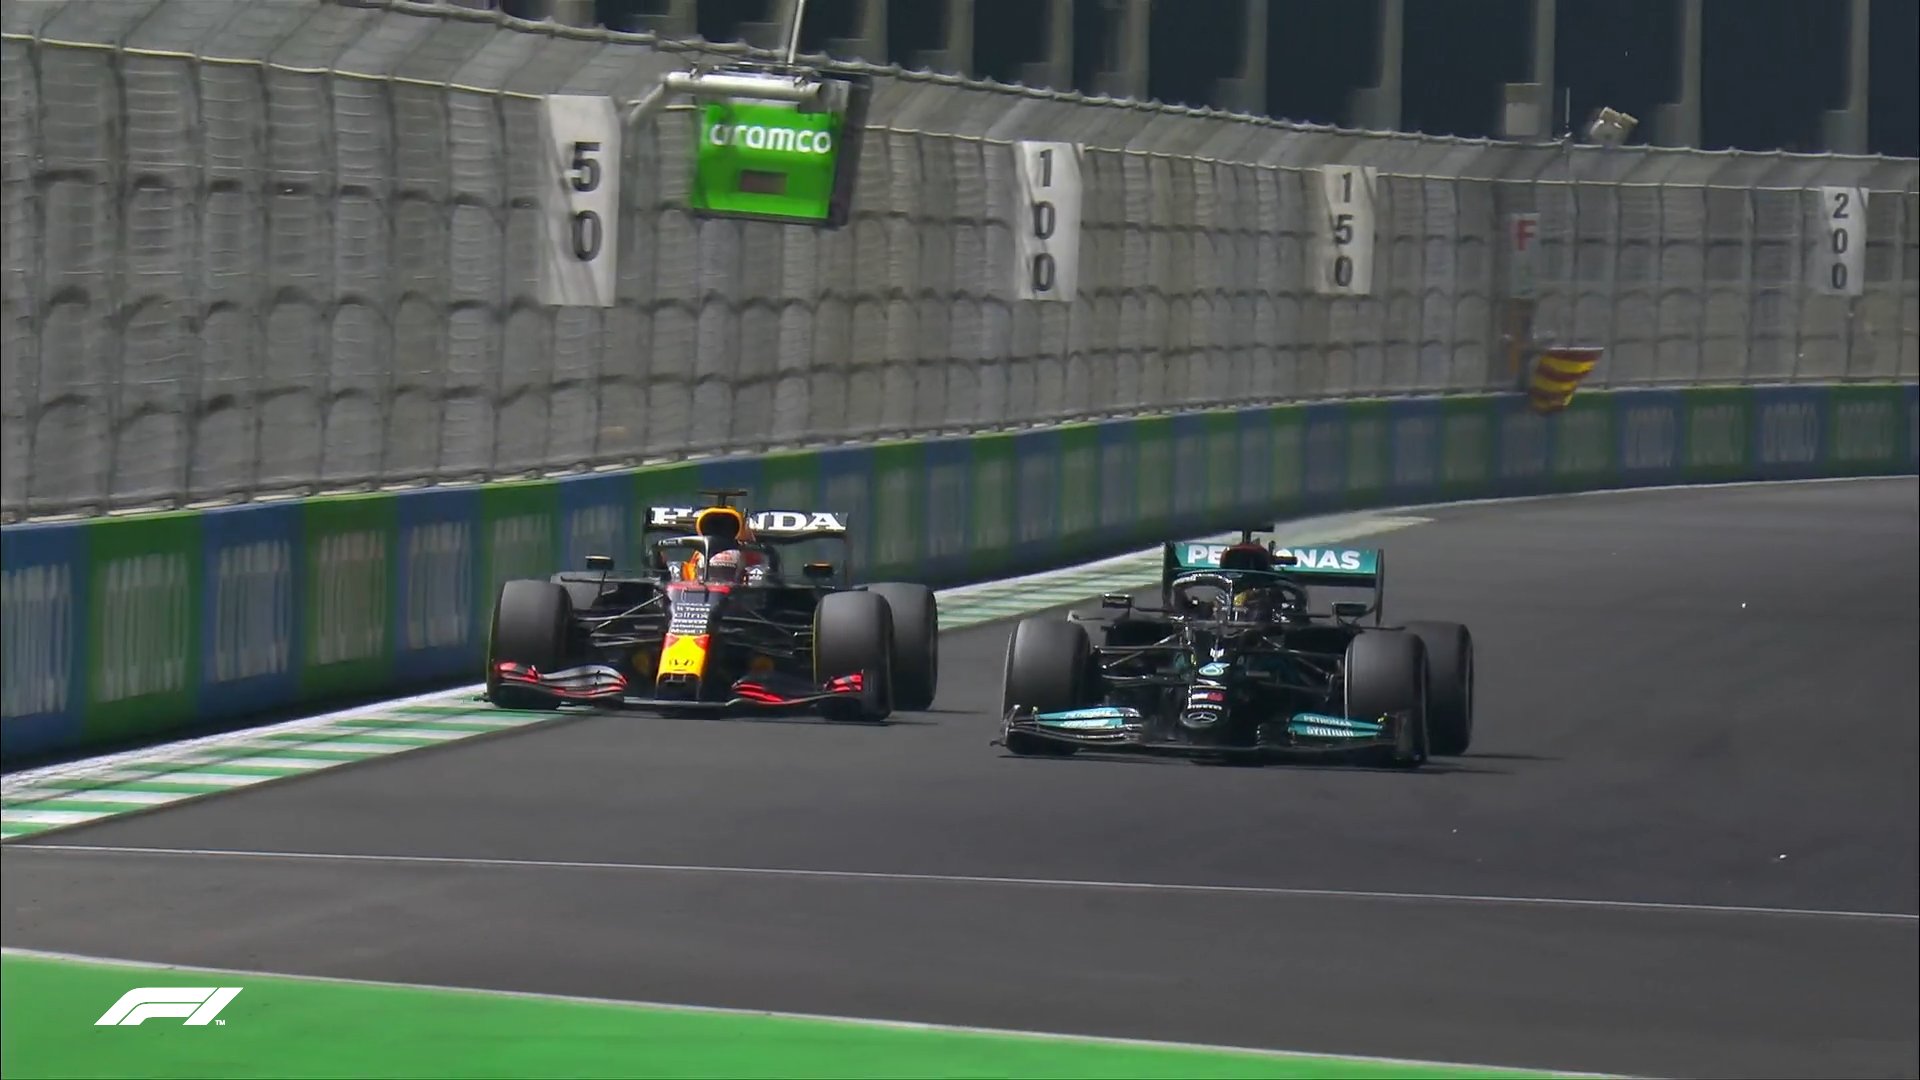 Titulli kampion vendoset në Abu Dhabi, Hamilton barazohet me Verstappen